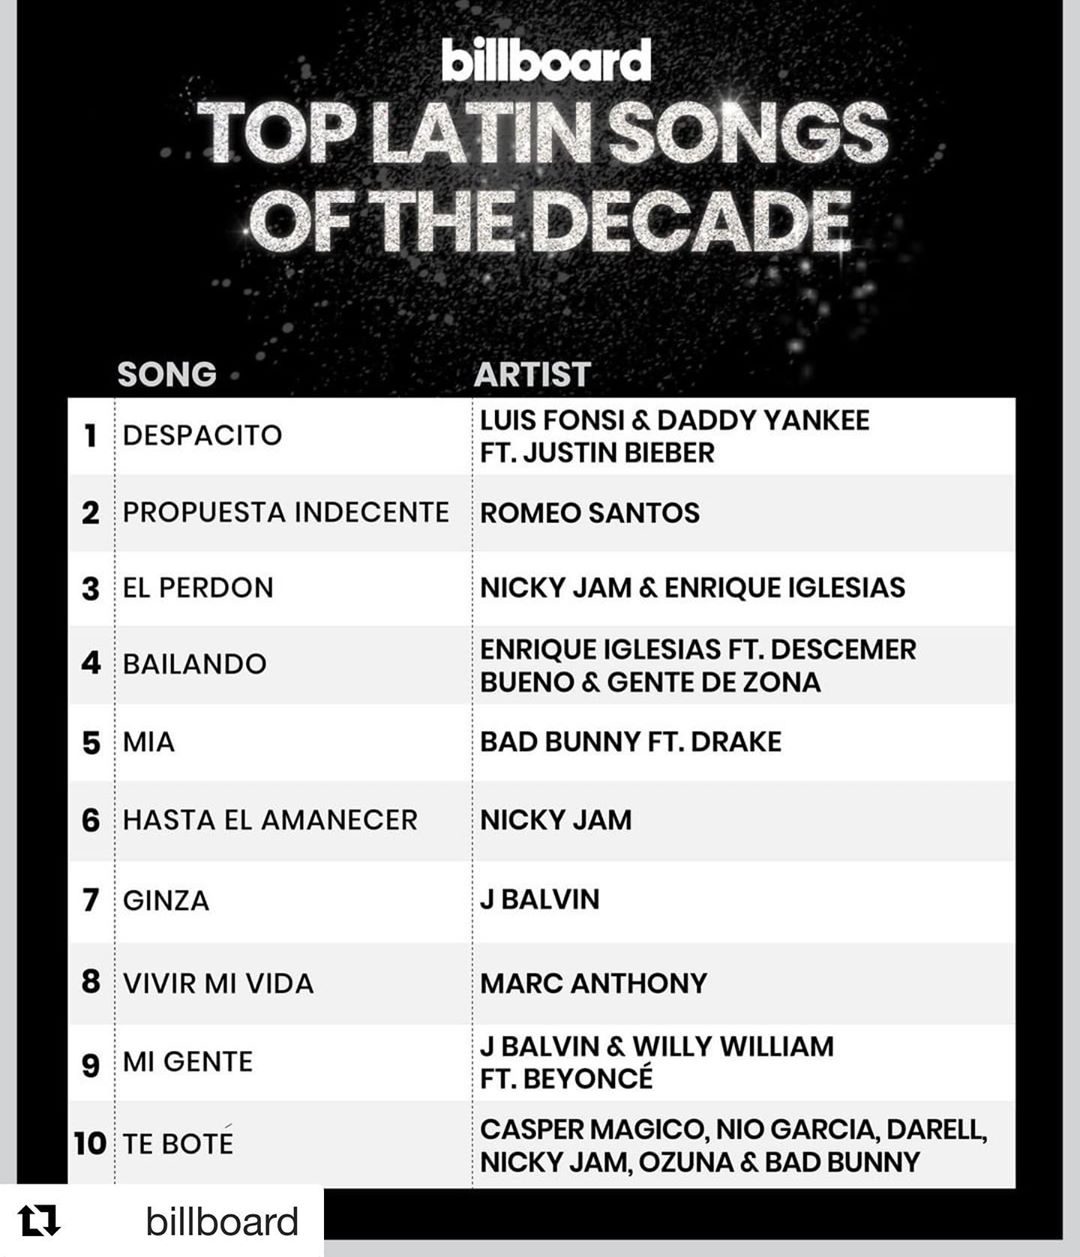 Estas Son Las 10 Mejores Canciones Latinas De La Década Según Billboard — Fmdos